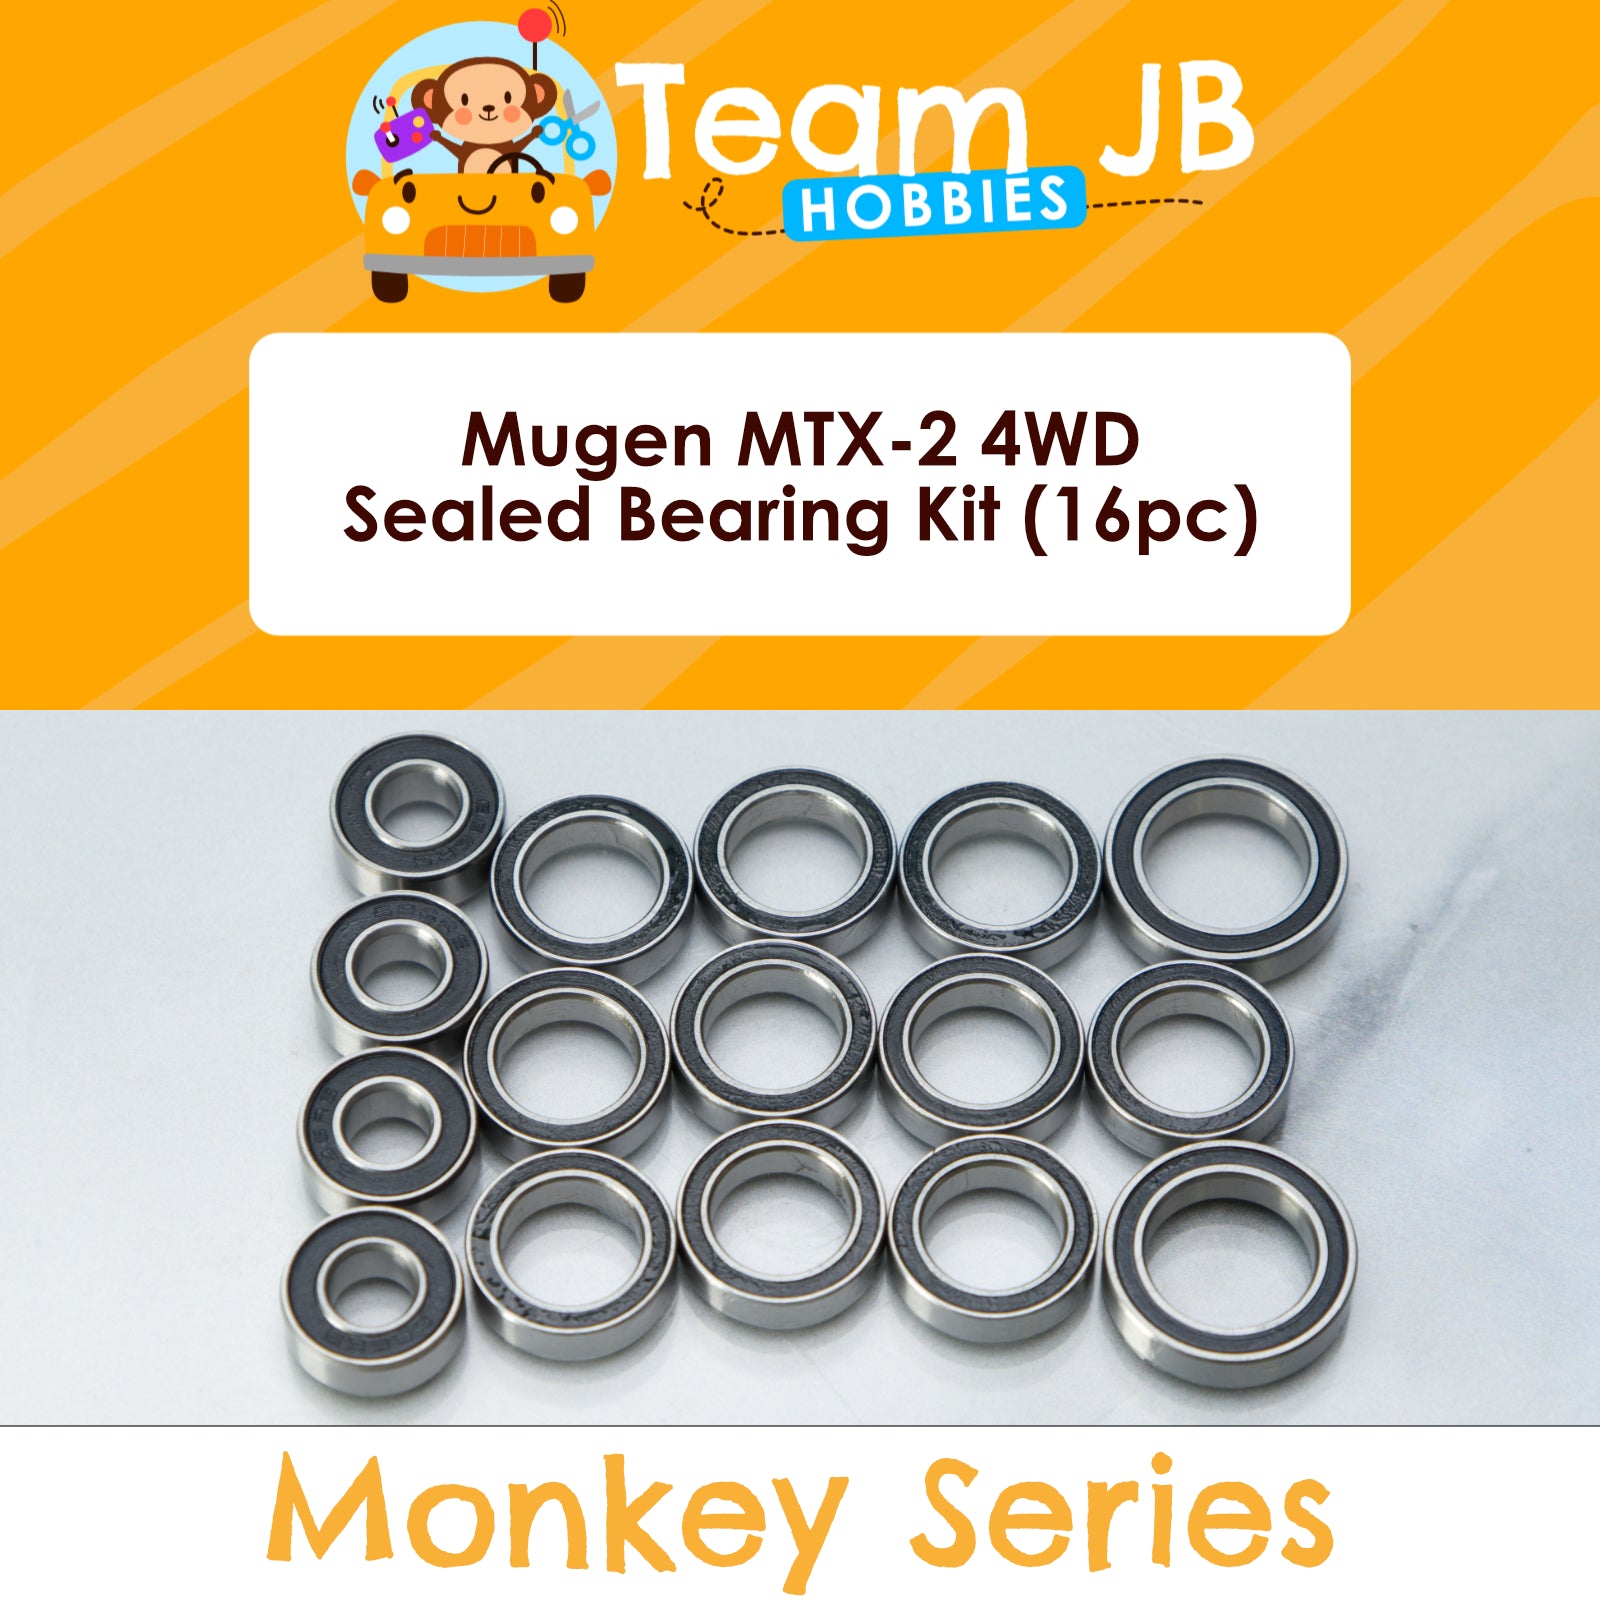 Mugen MTX-2 4WD - Sealed Bearing Kit